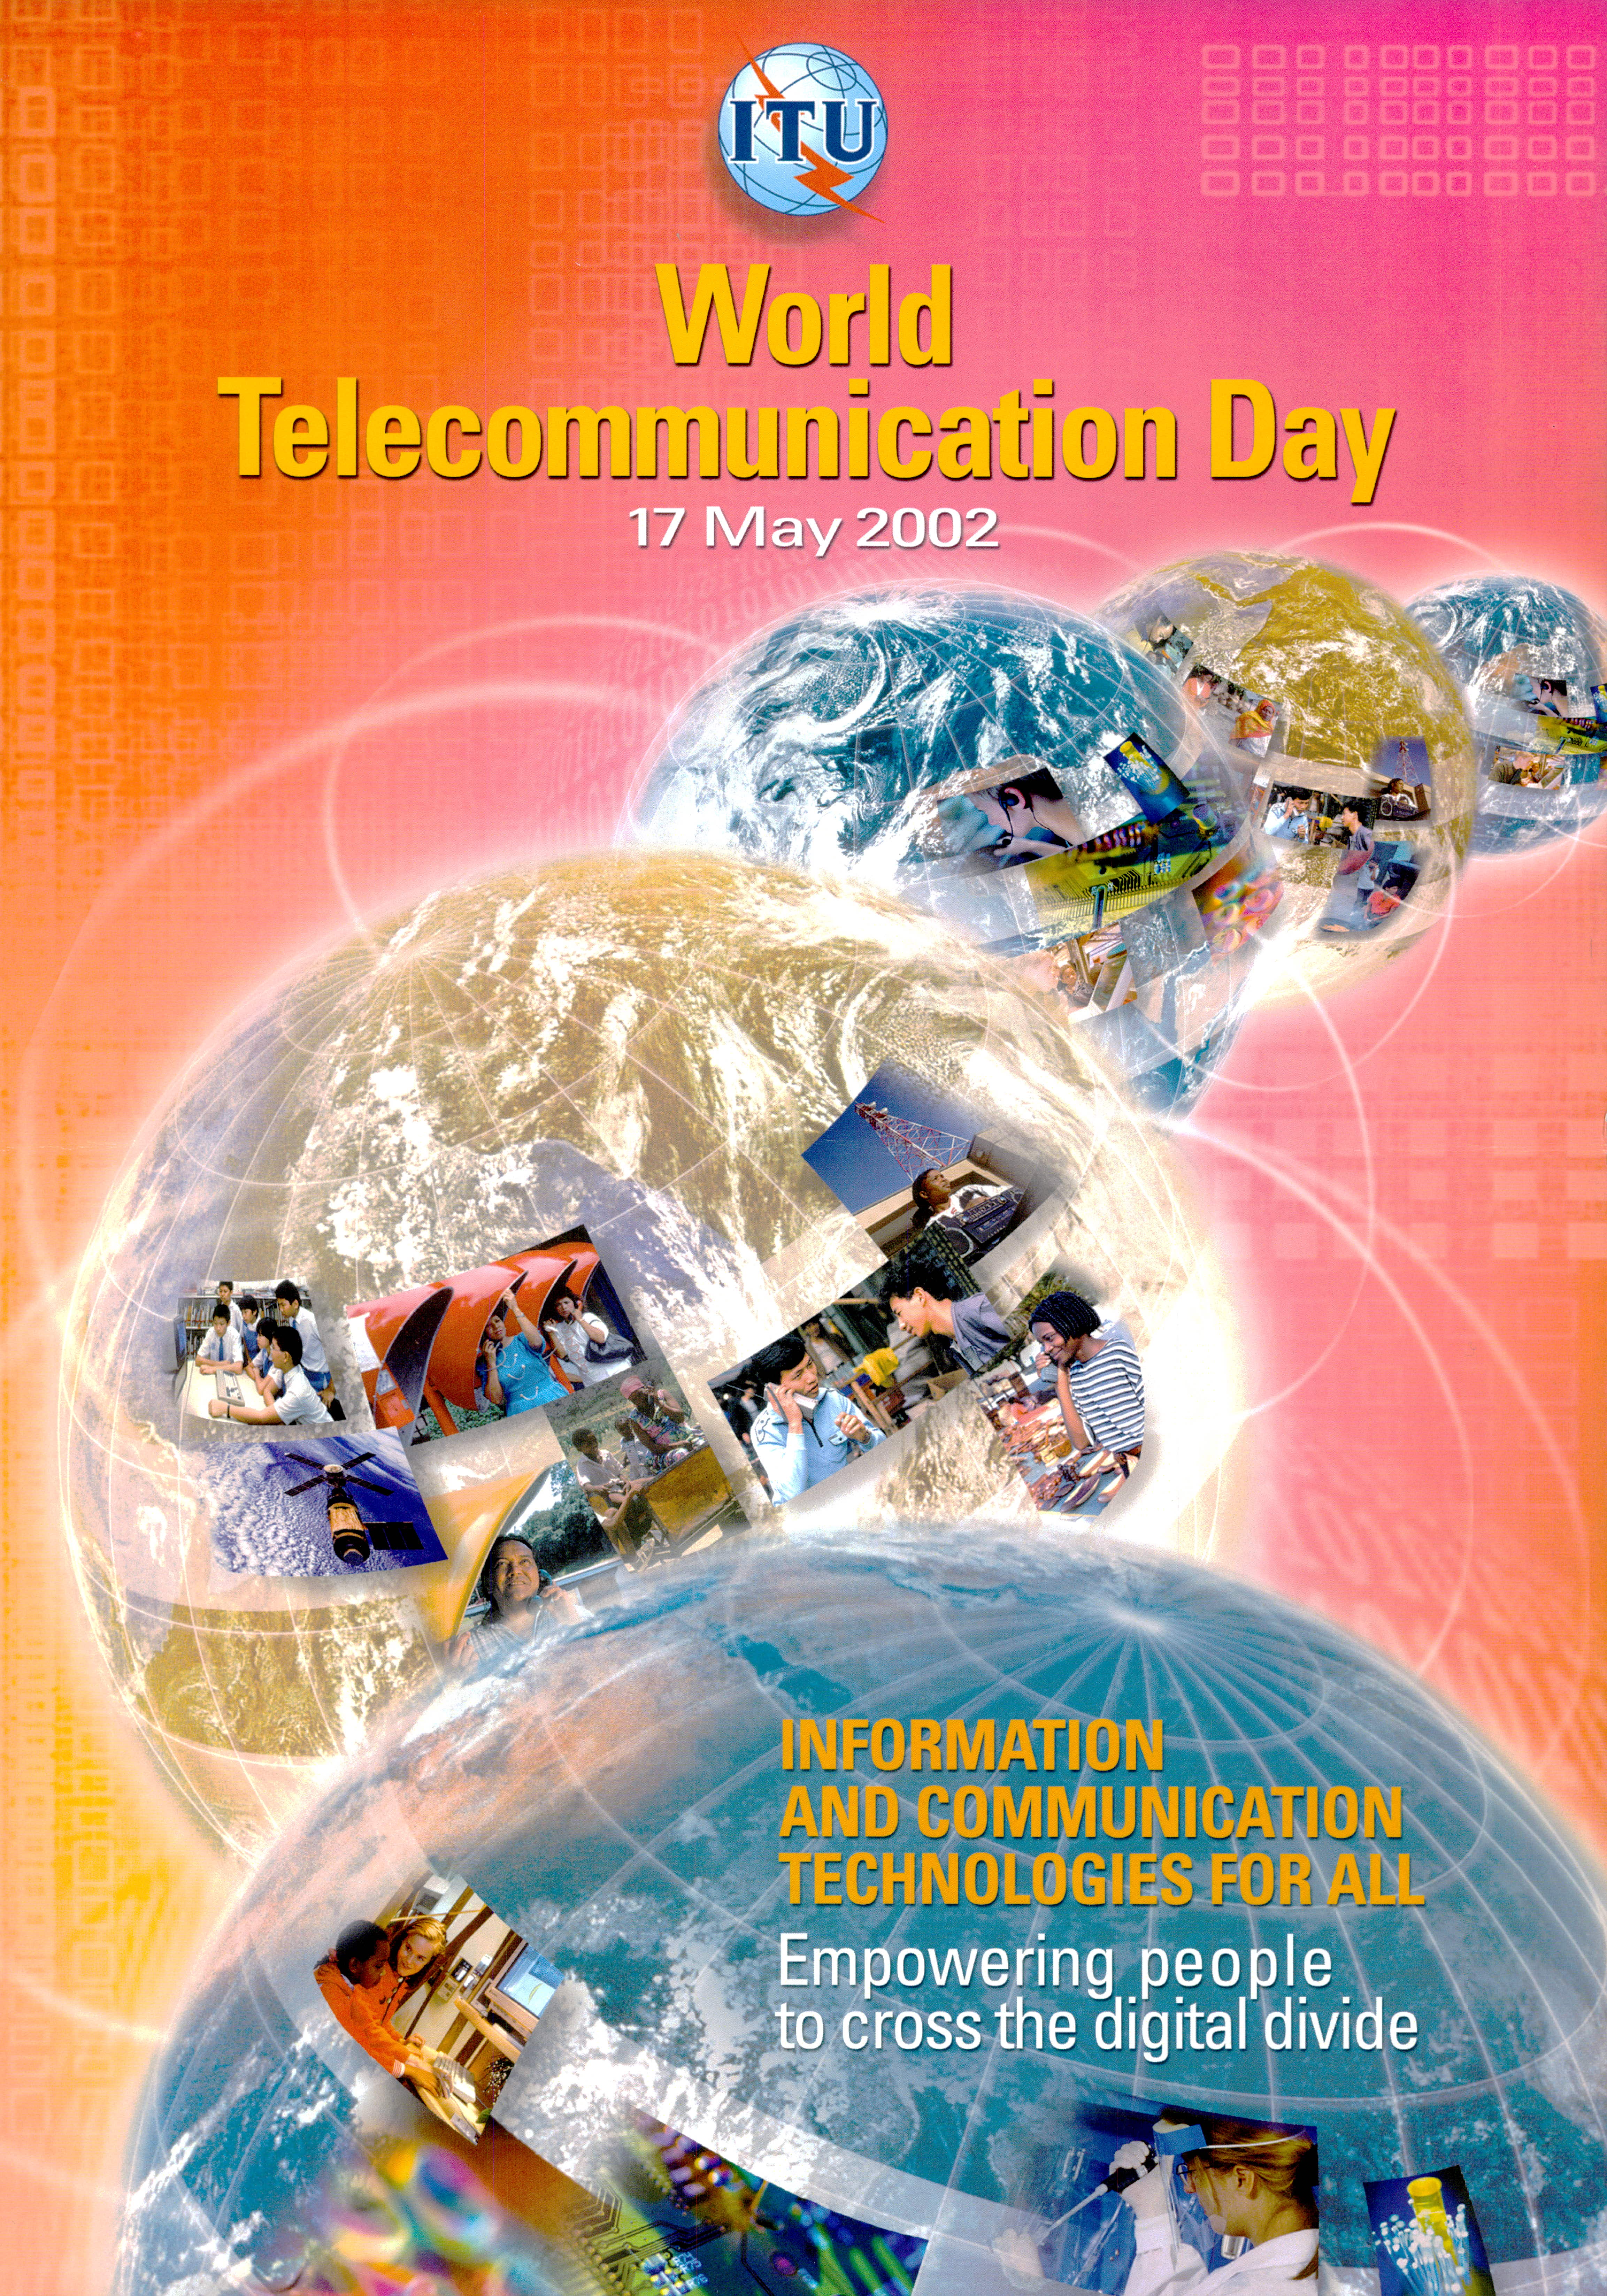 World Telecommunication Day (WTD) 2002